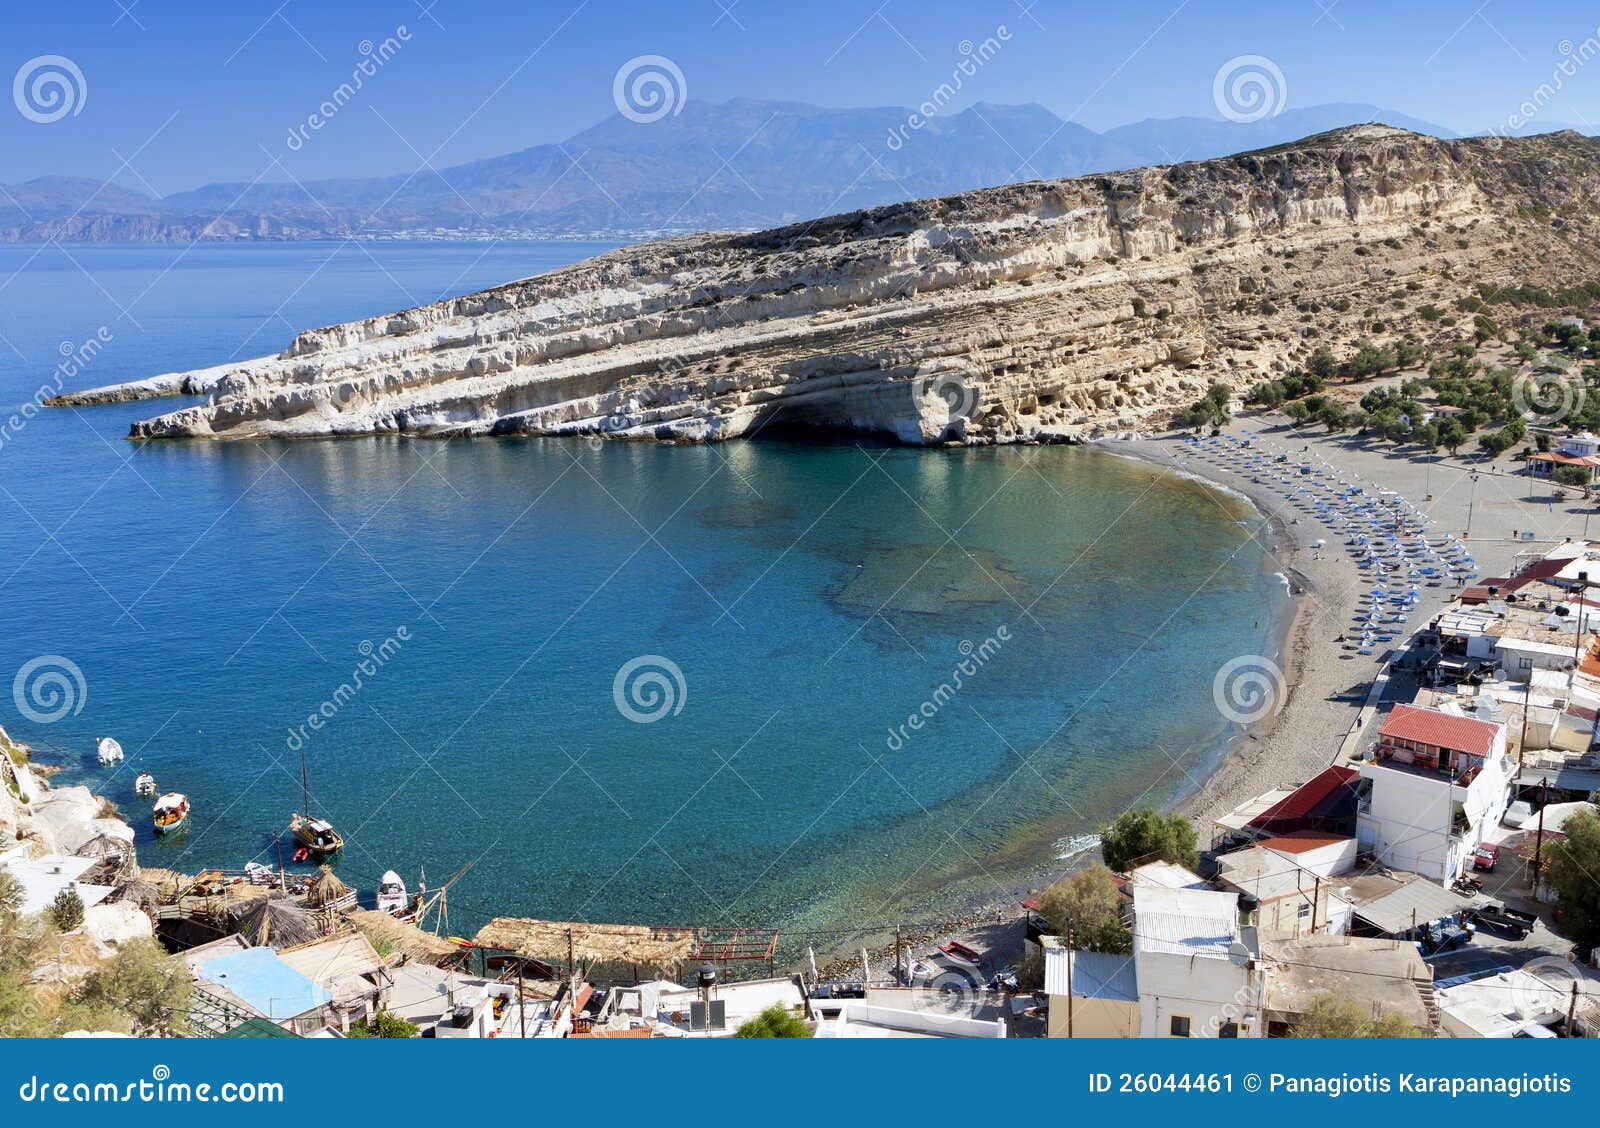 matala beach at crete island